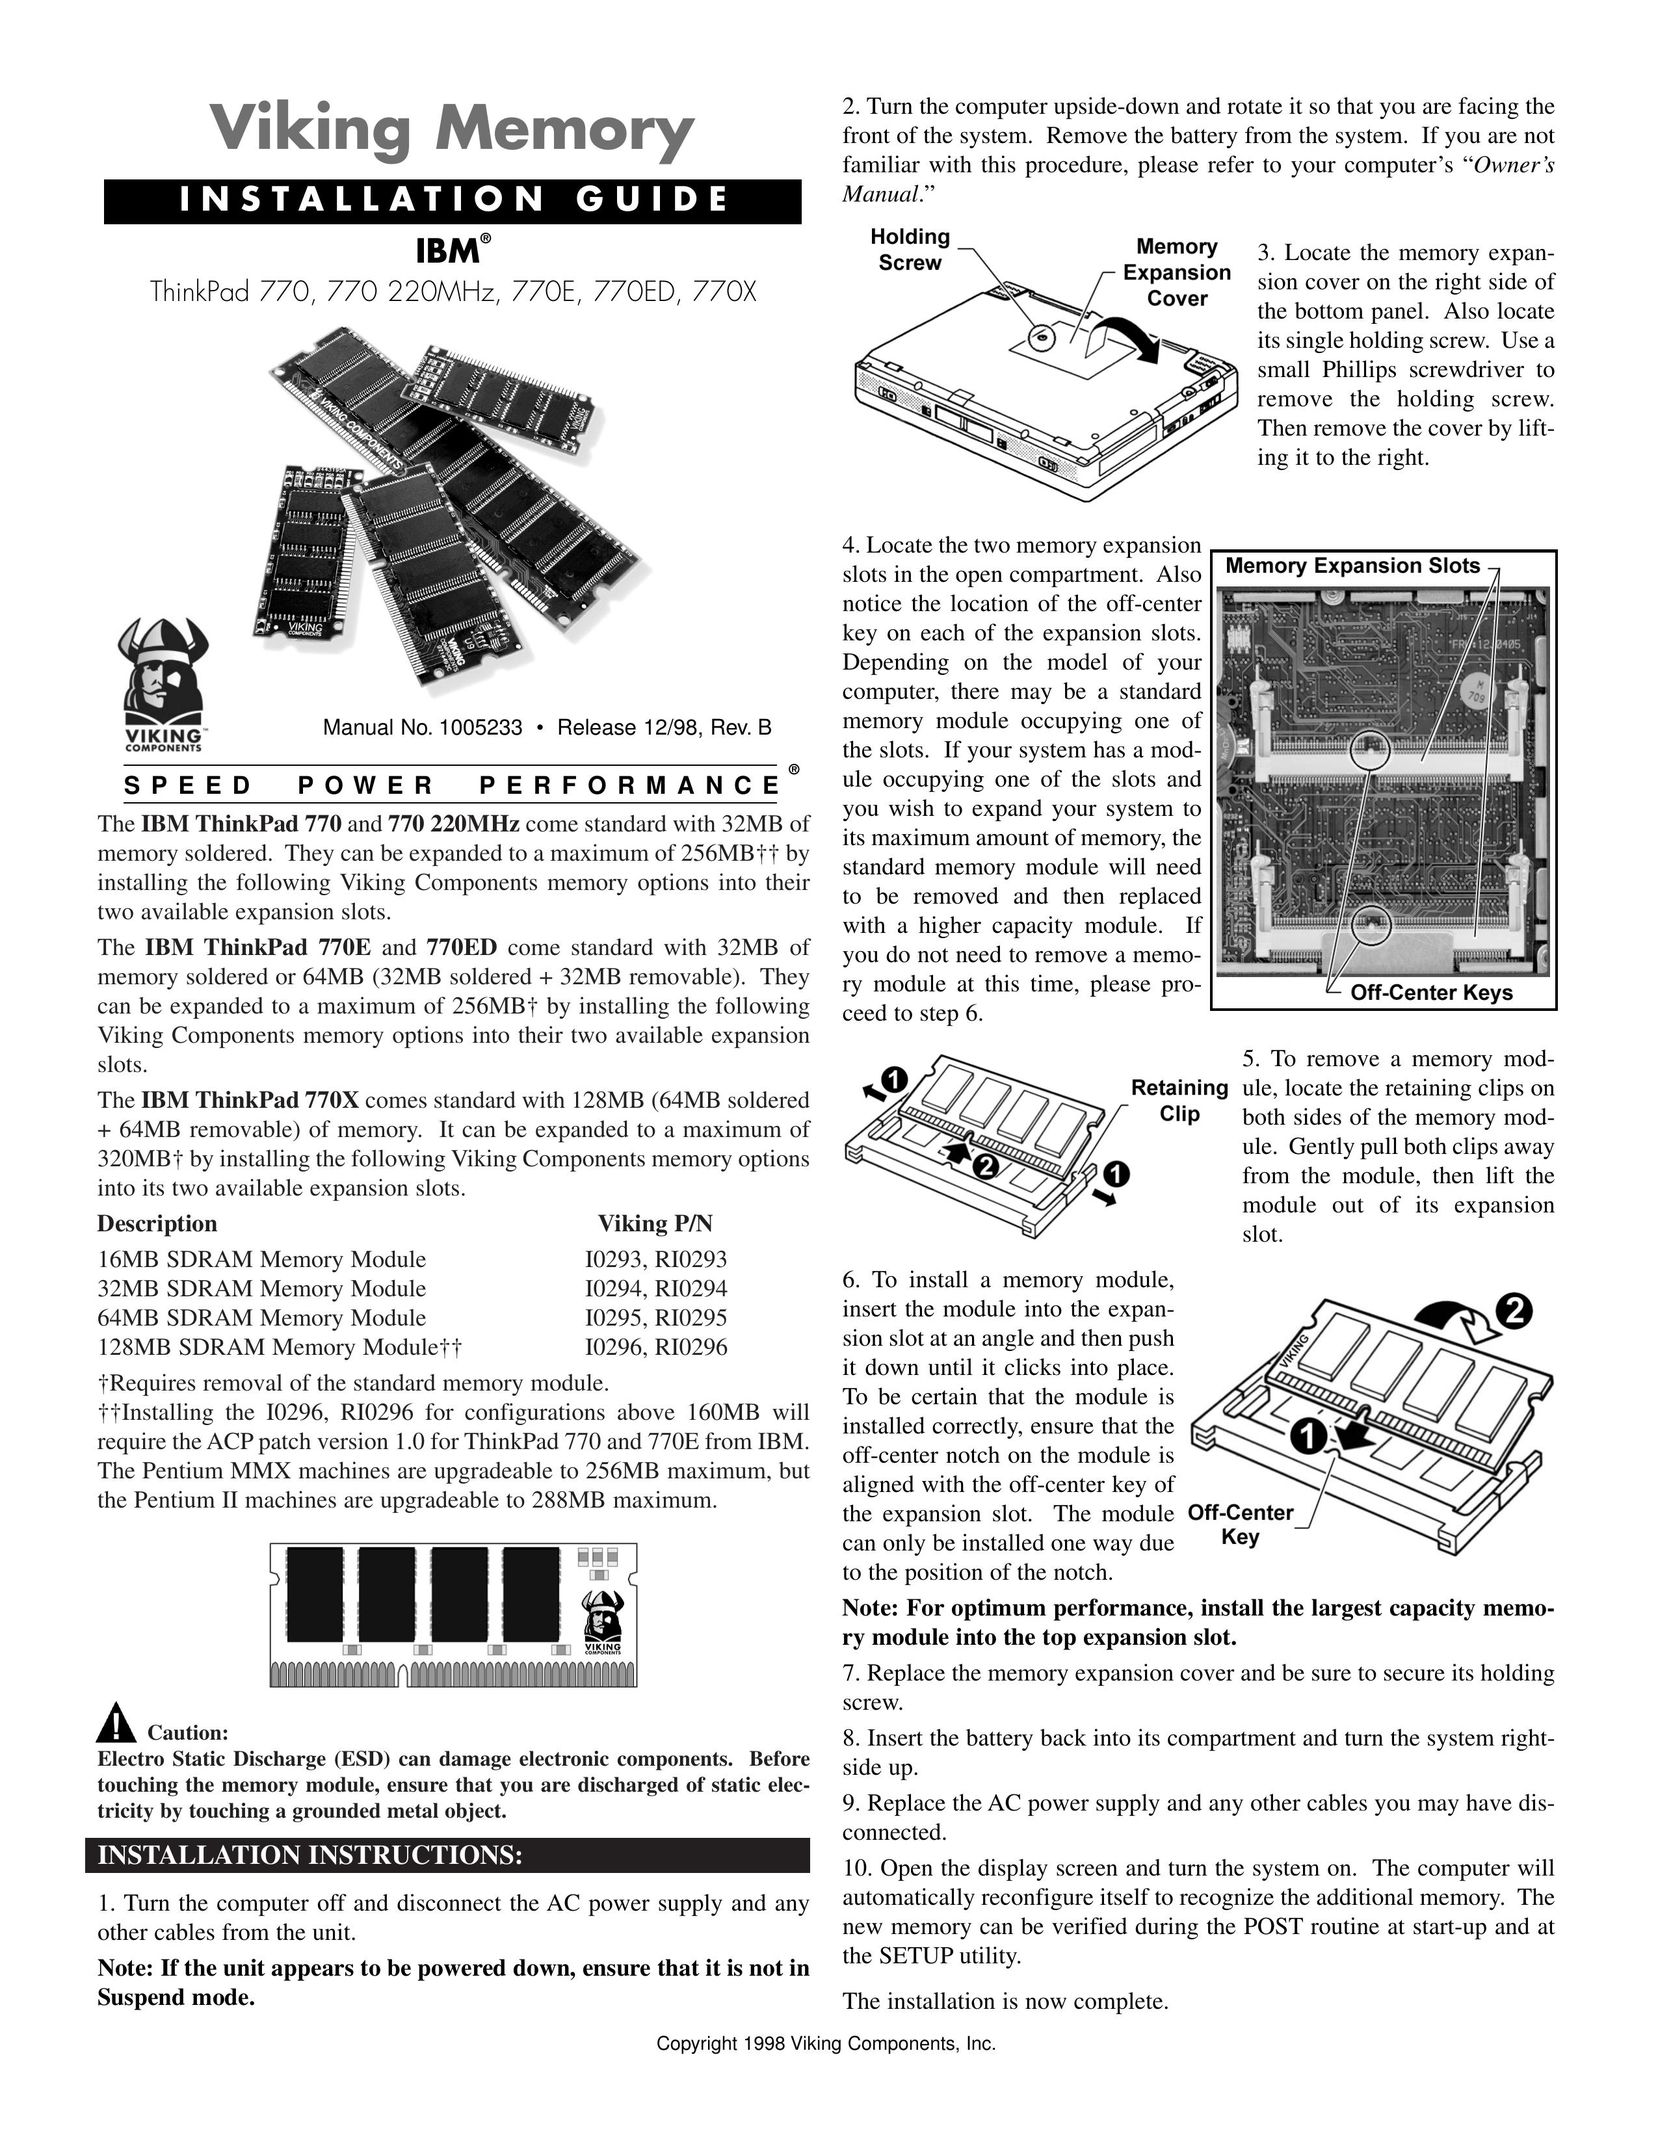 Viking 770 220 MHz Computer Hardware User Manual